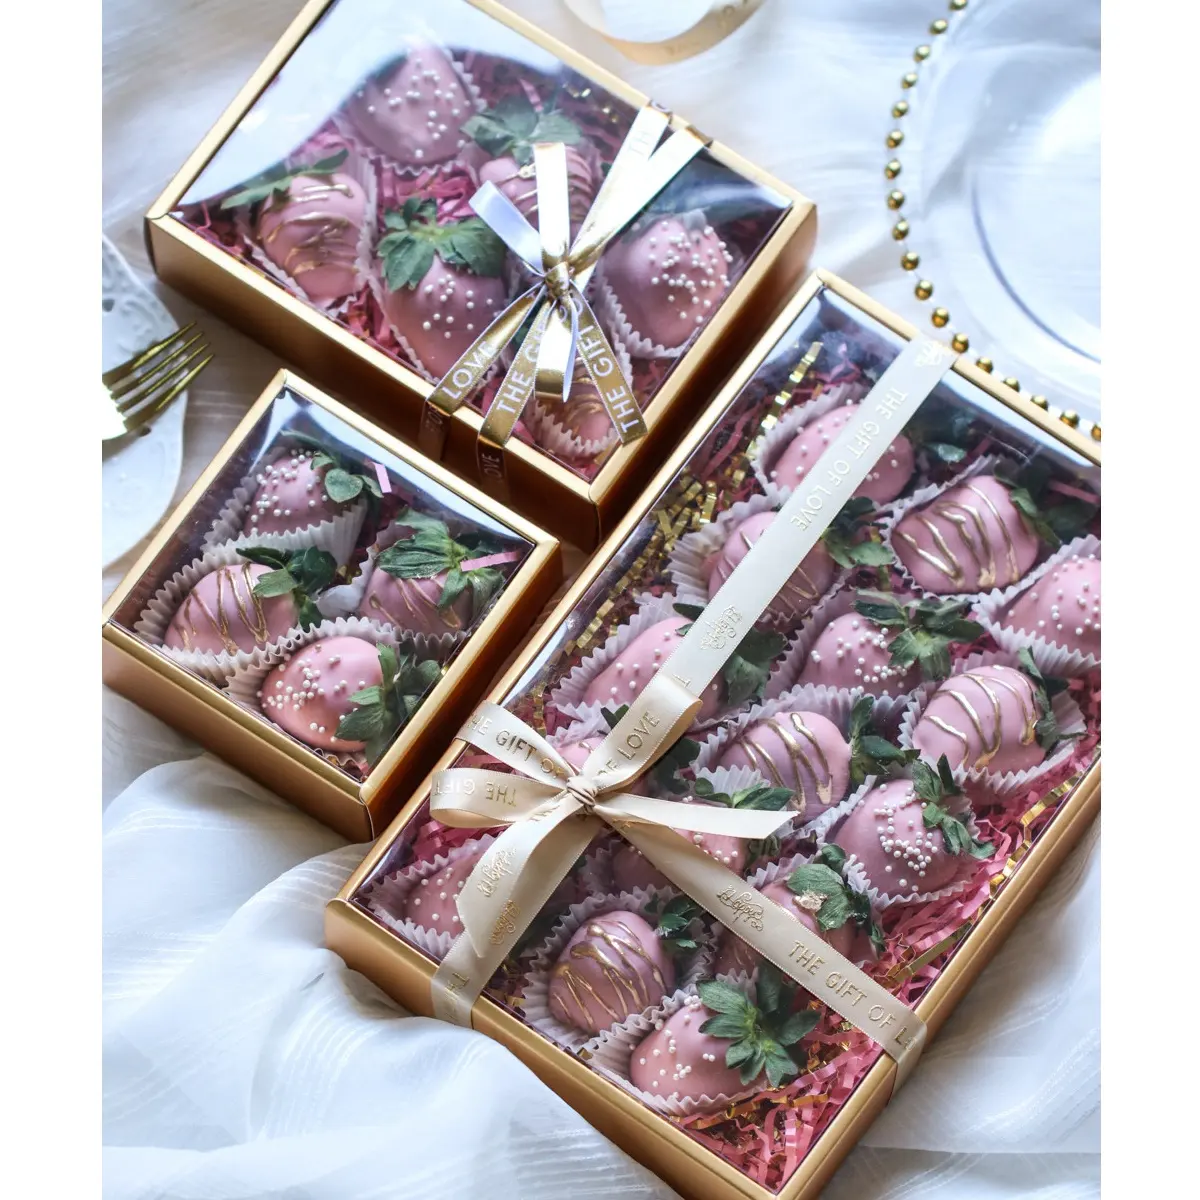 IMEE-caja personalizada de lujo para panadería, caja de regalo de San Valentín con tapa transparente, color dorado y rojo, Chocolate, galletas, dulces, pasteles, navidad